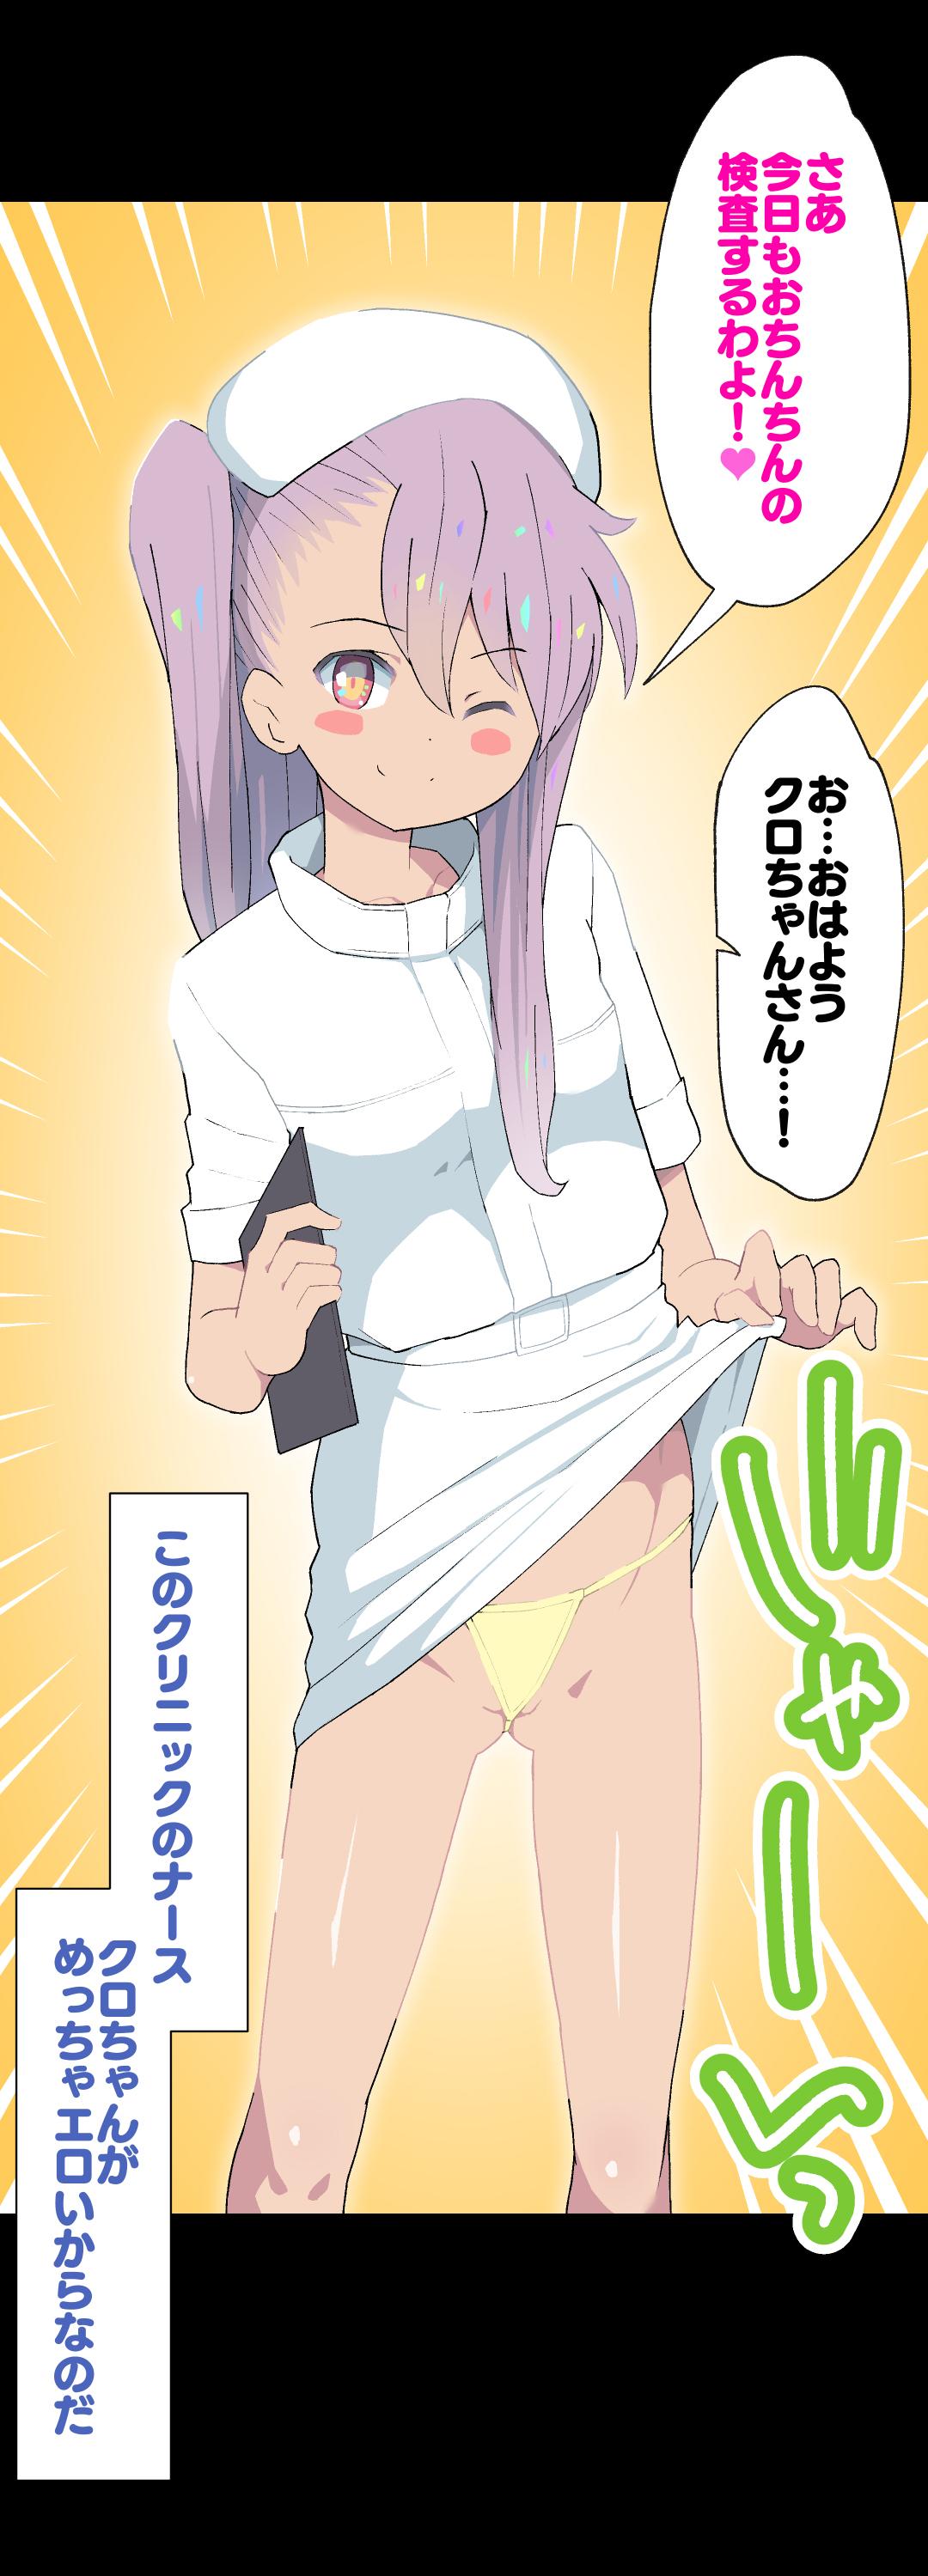 Kuro-chan Nurse no Ochinchin Kenshin Vol. 01 5